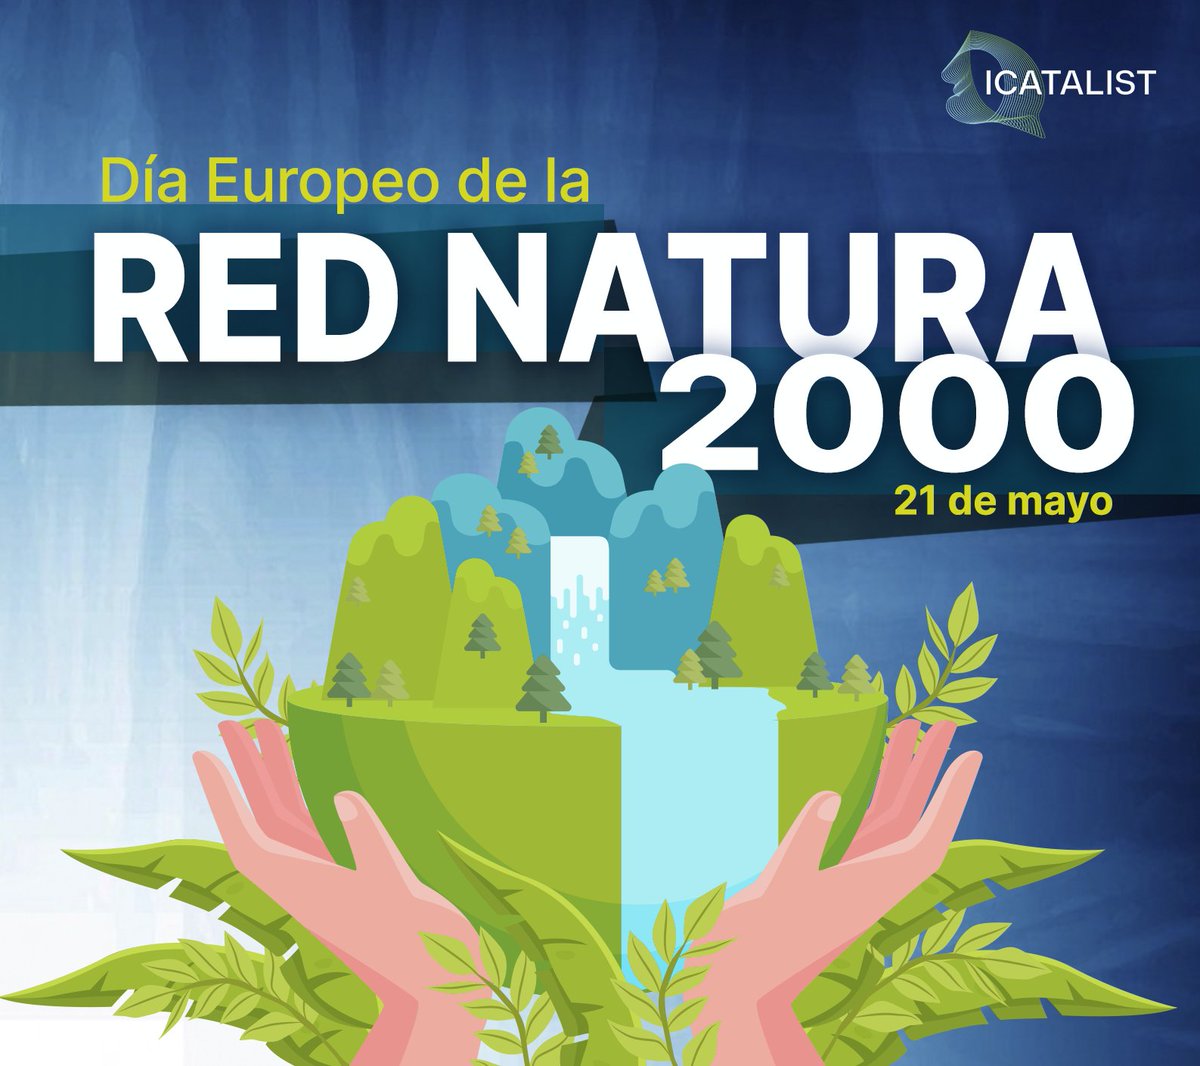 🌿 Desde #ICATALIST celebramos el Día de la Red Natura 2000, clave para conservar la biodiversidad y los ecosistemas. ¡Únete a nuestro compromiso con la conservación y gestión sostenible de nuestro patrimonio natural! 💼🌍 #RedNatura2000 #DesarrolloSostenible #ICATALIST